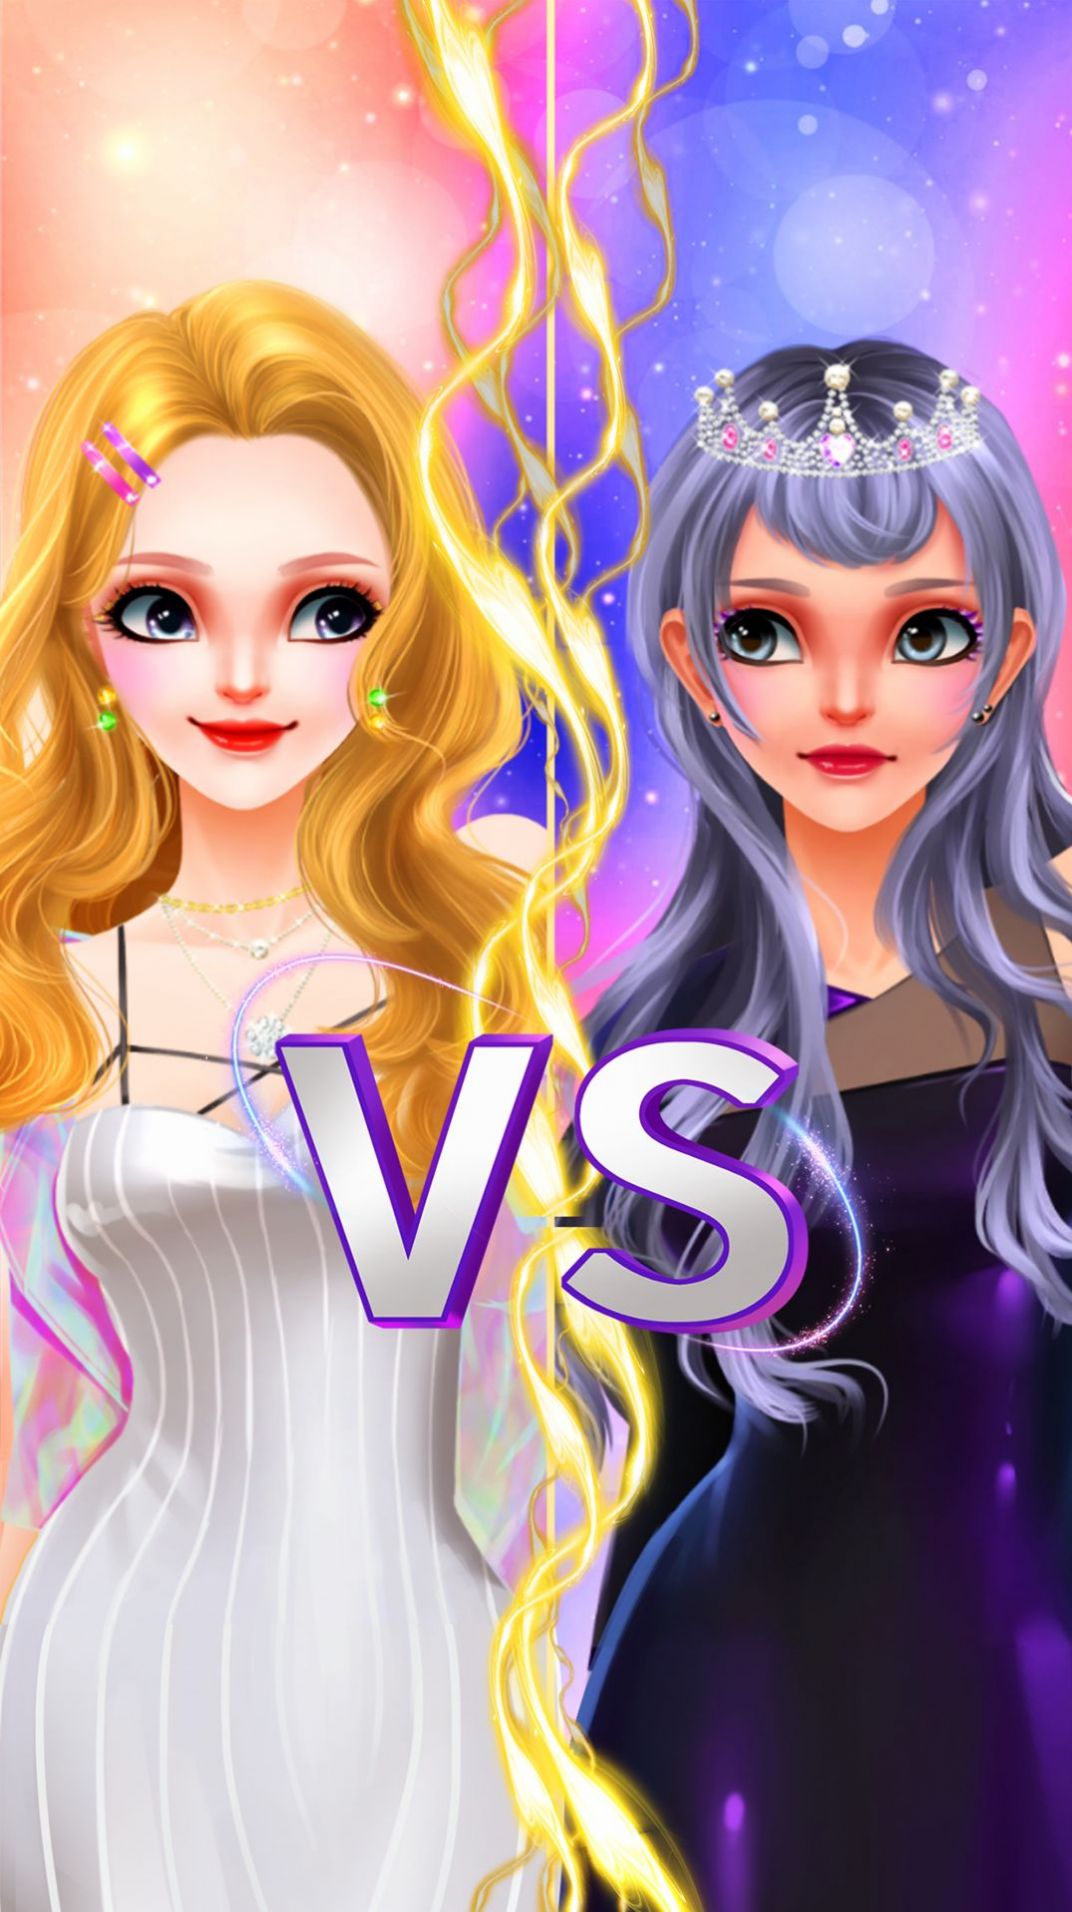 公主美妆学员艺术手游游戏下载-公主美妆学员艺术手游游戏手机版 V8.0.2